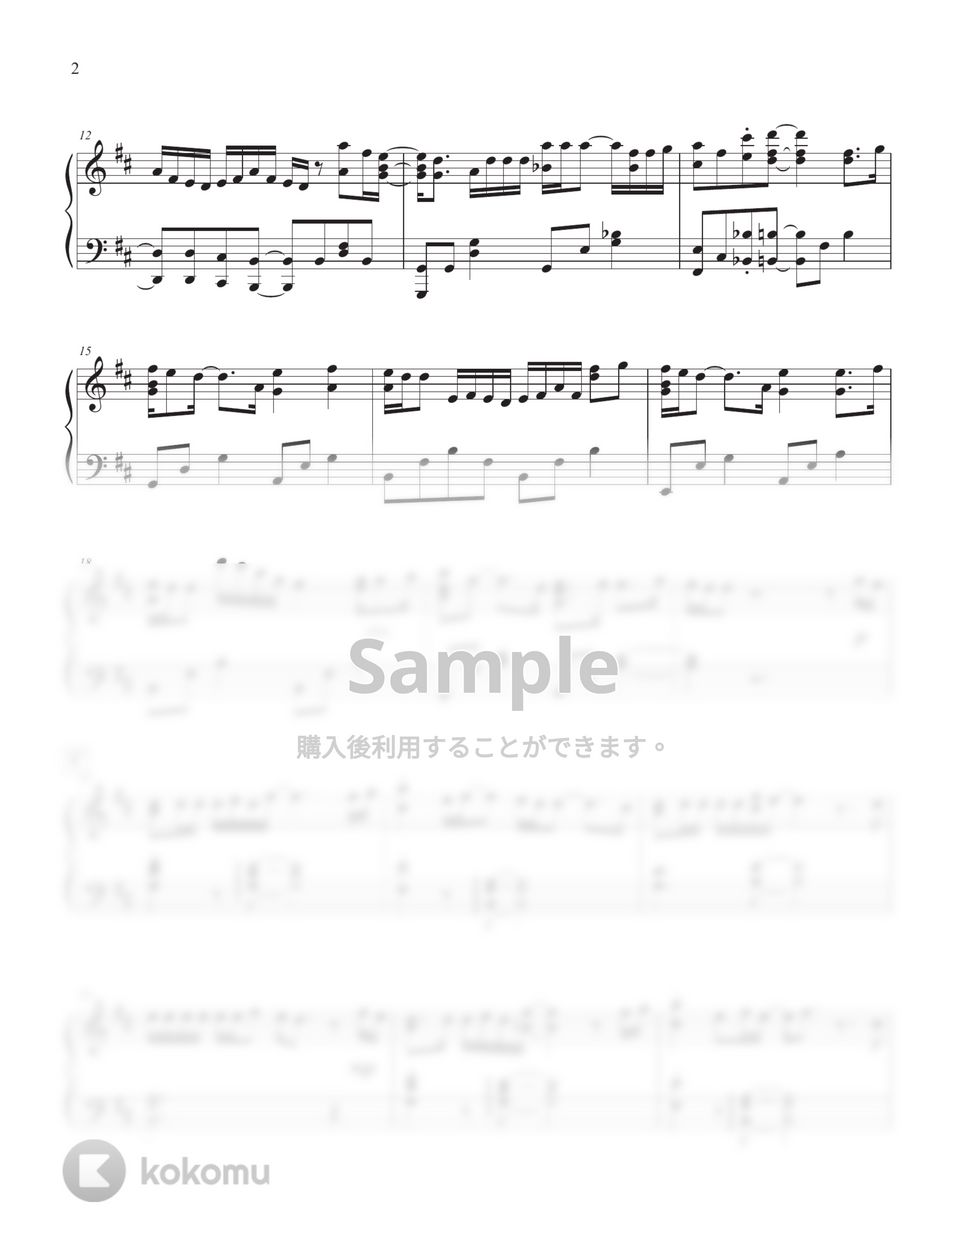 ヨルシカ - 左右盲 by Tully Piano